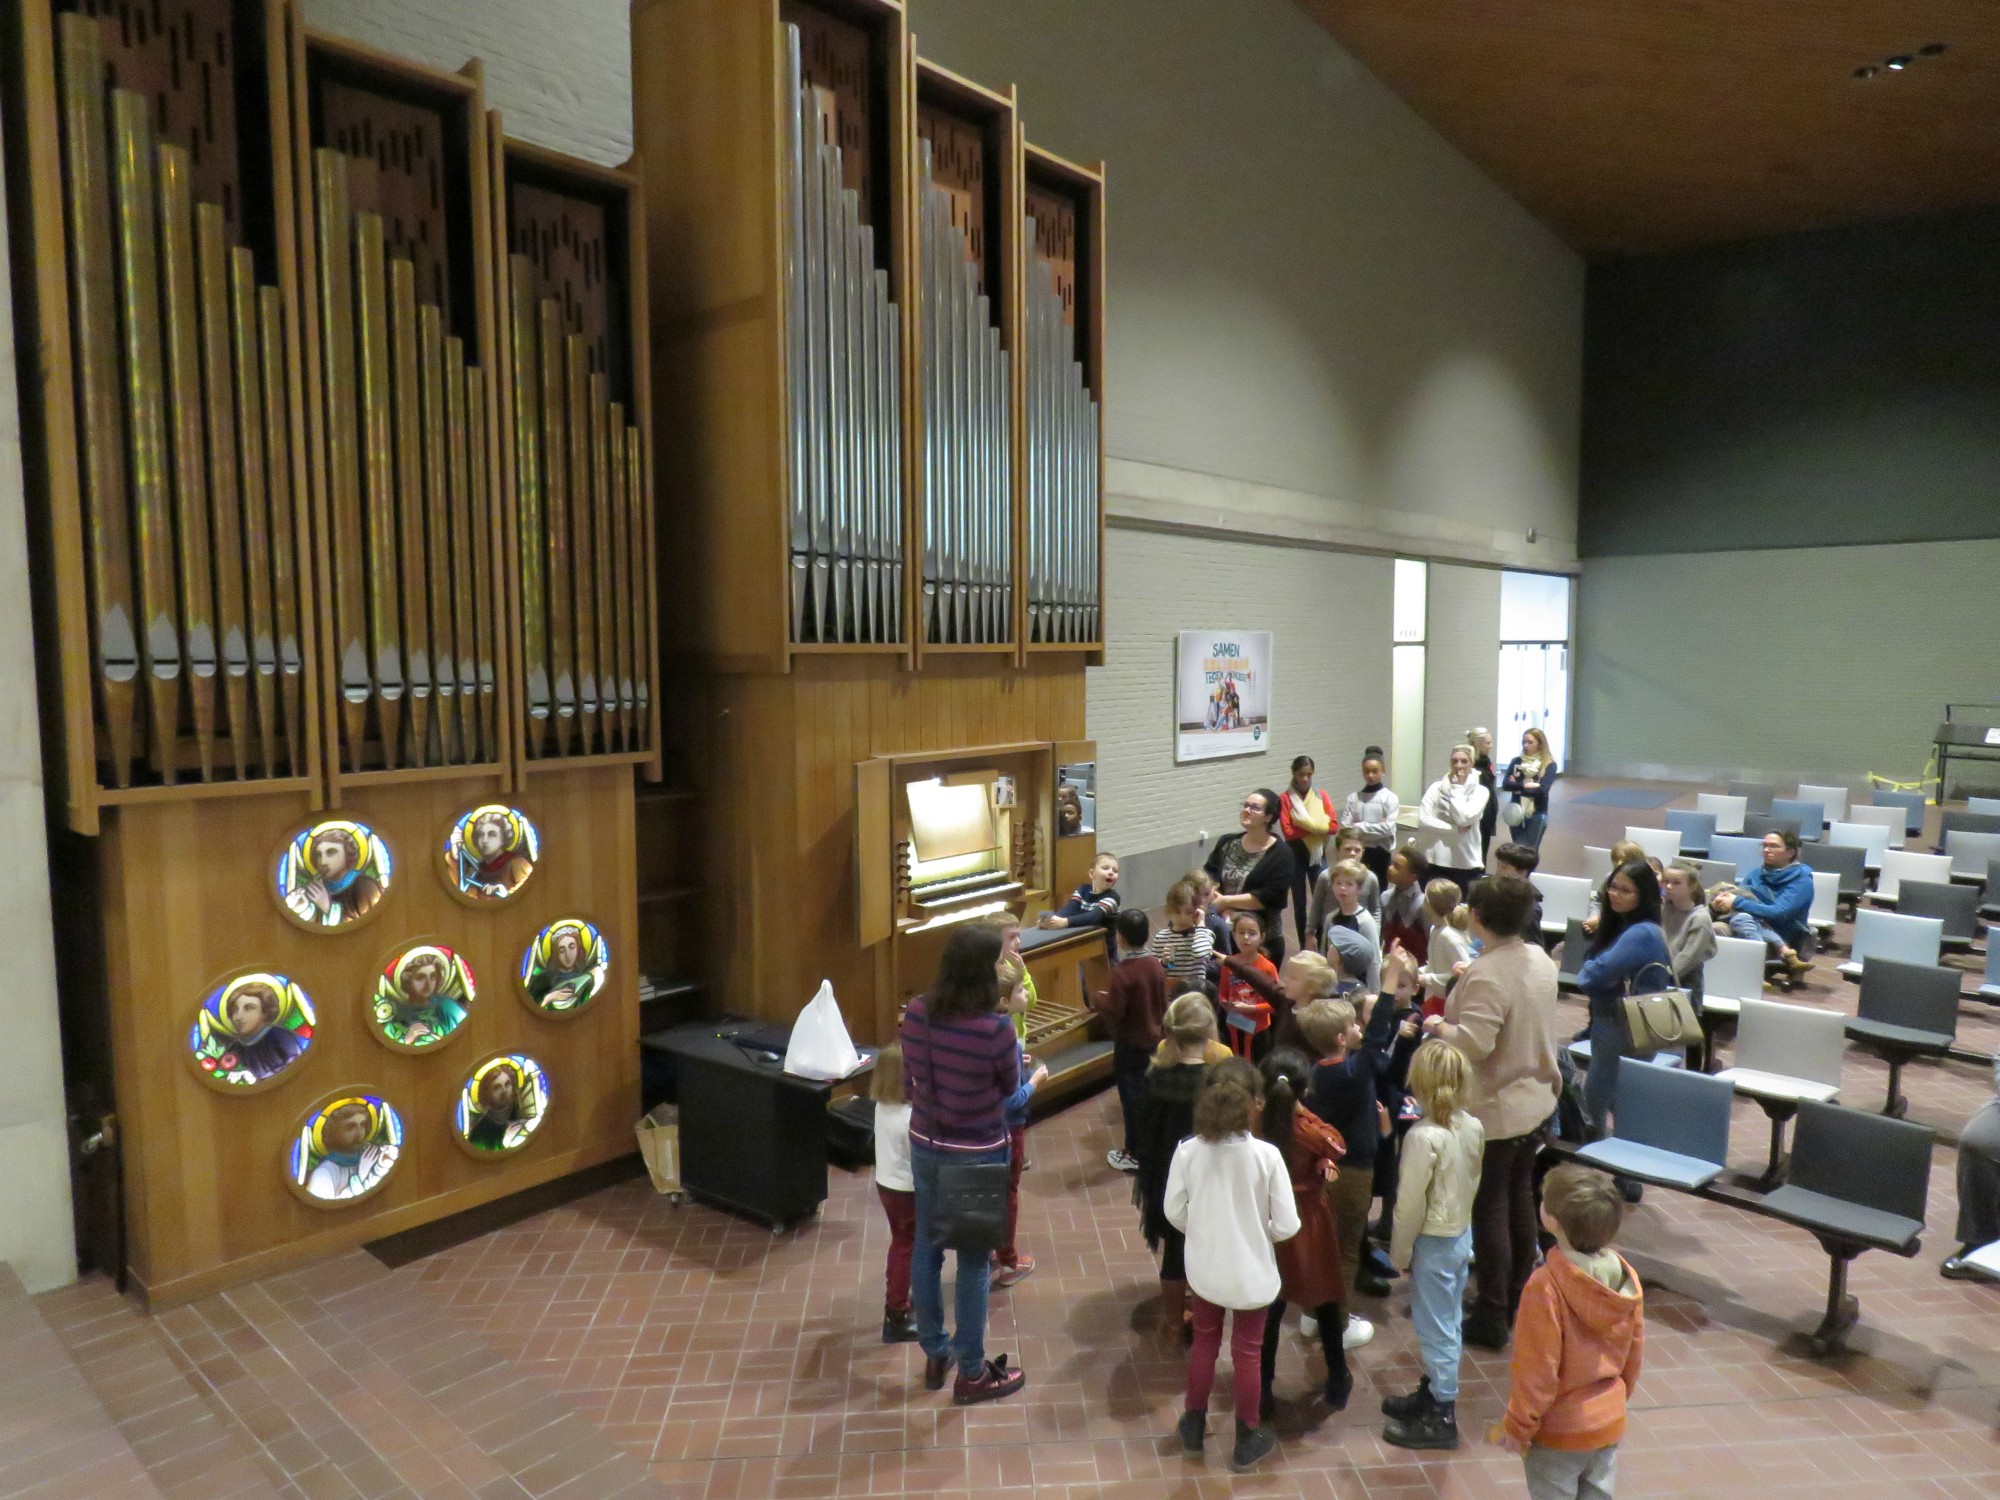 Het orgel heeft wel meer dan 1100 orgelpijpen, de grootste langer dan 3 meter